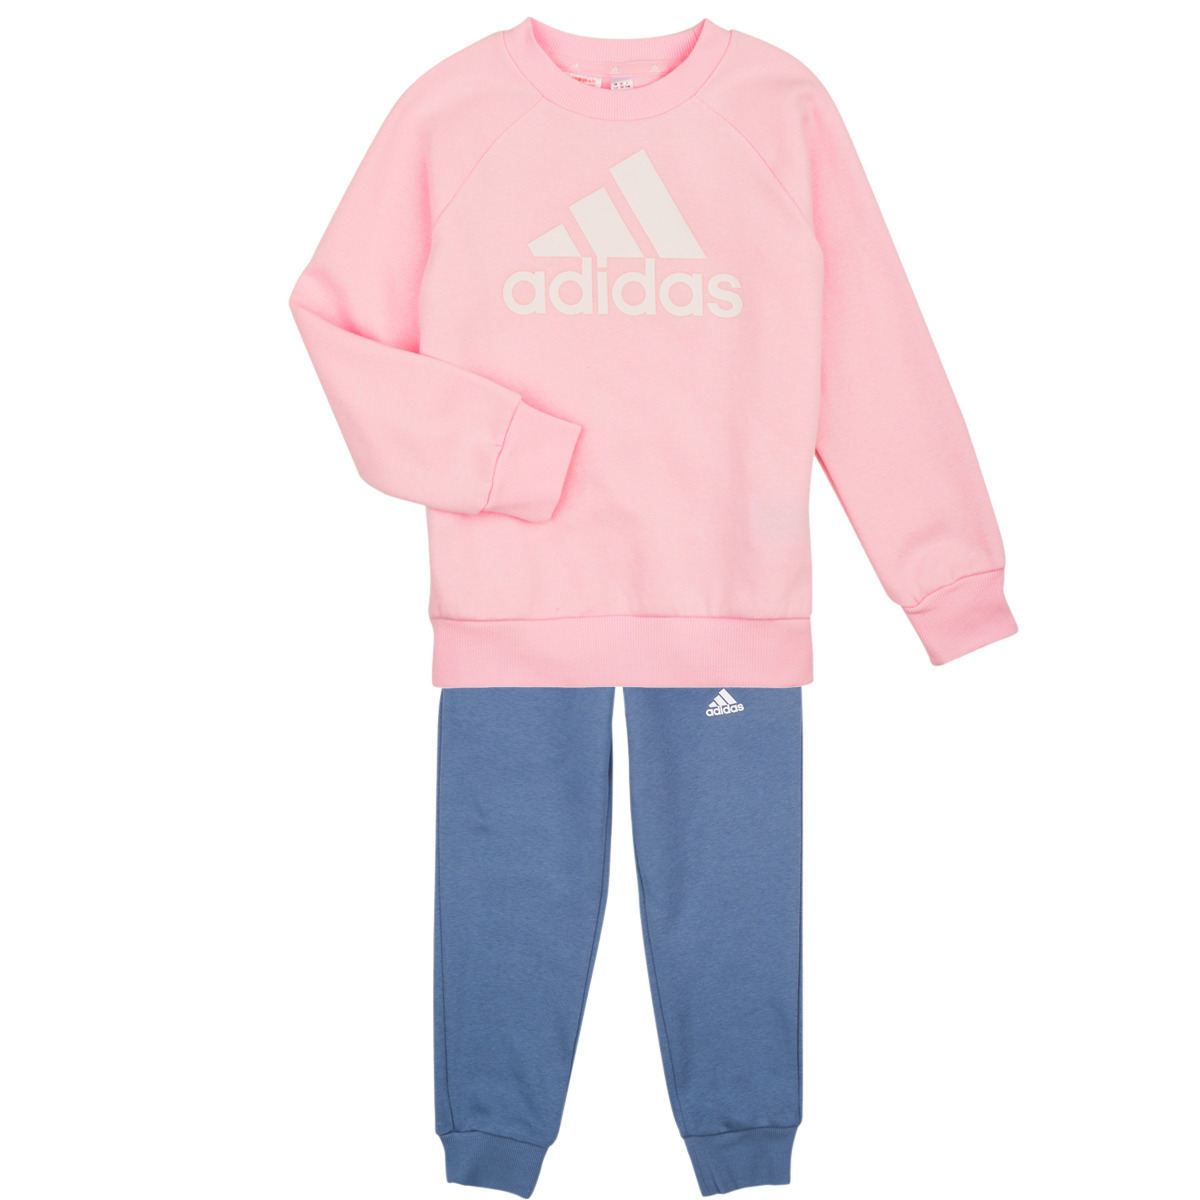 Adidas Sportswear Rose / Marine LK BOS JOG FL UggcdyTs